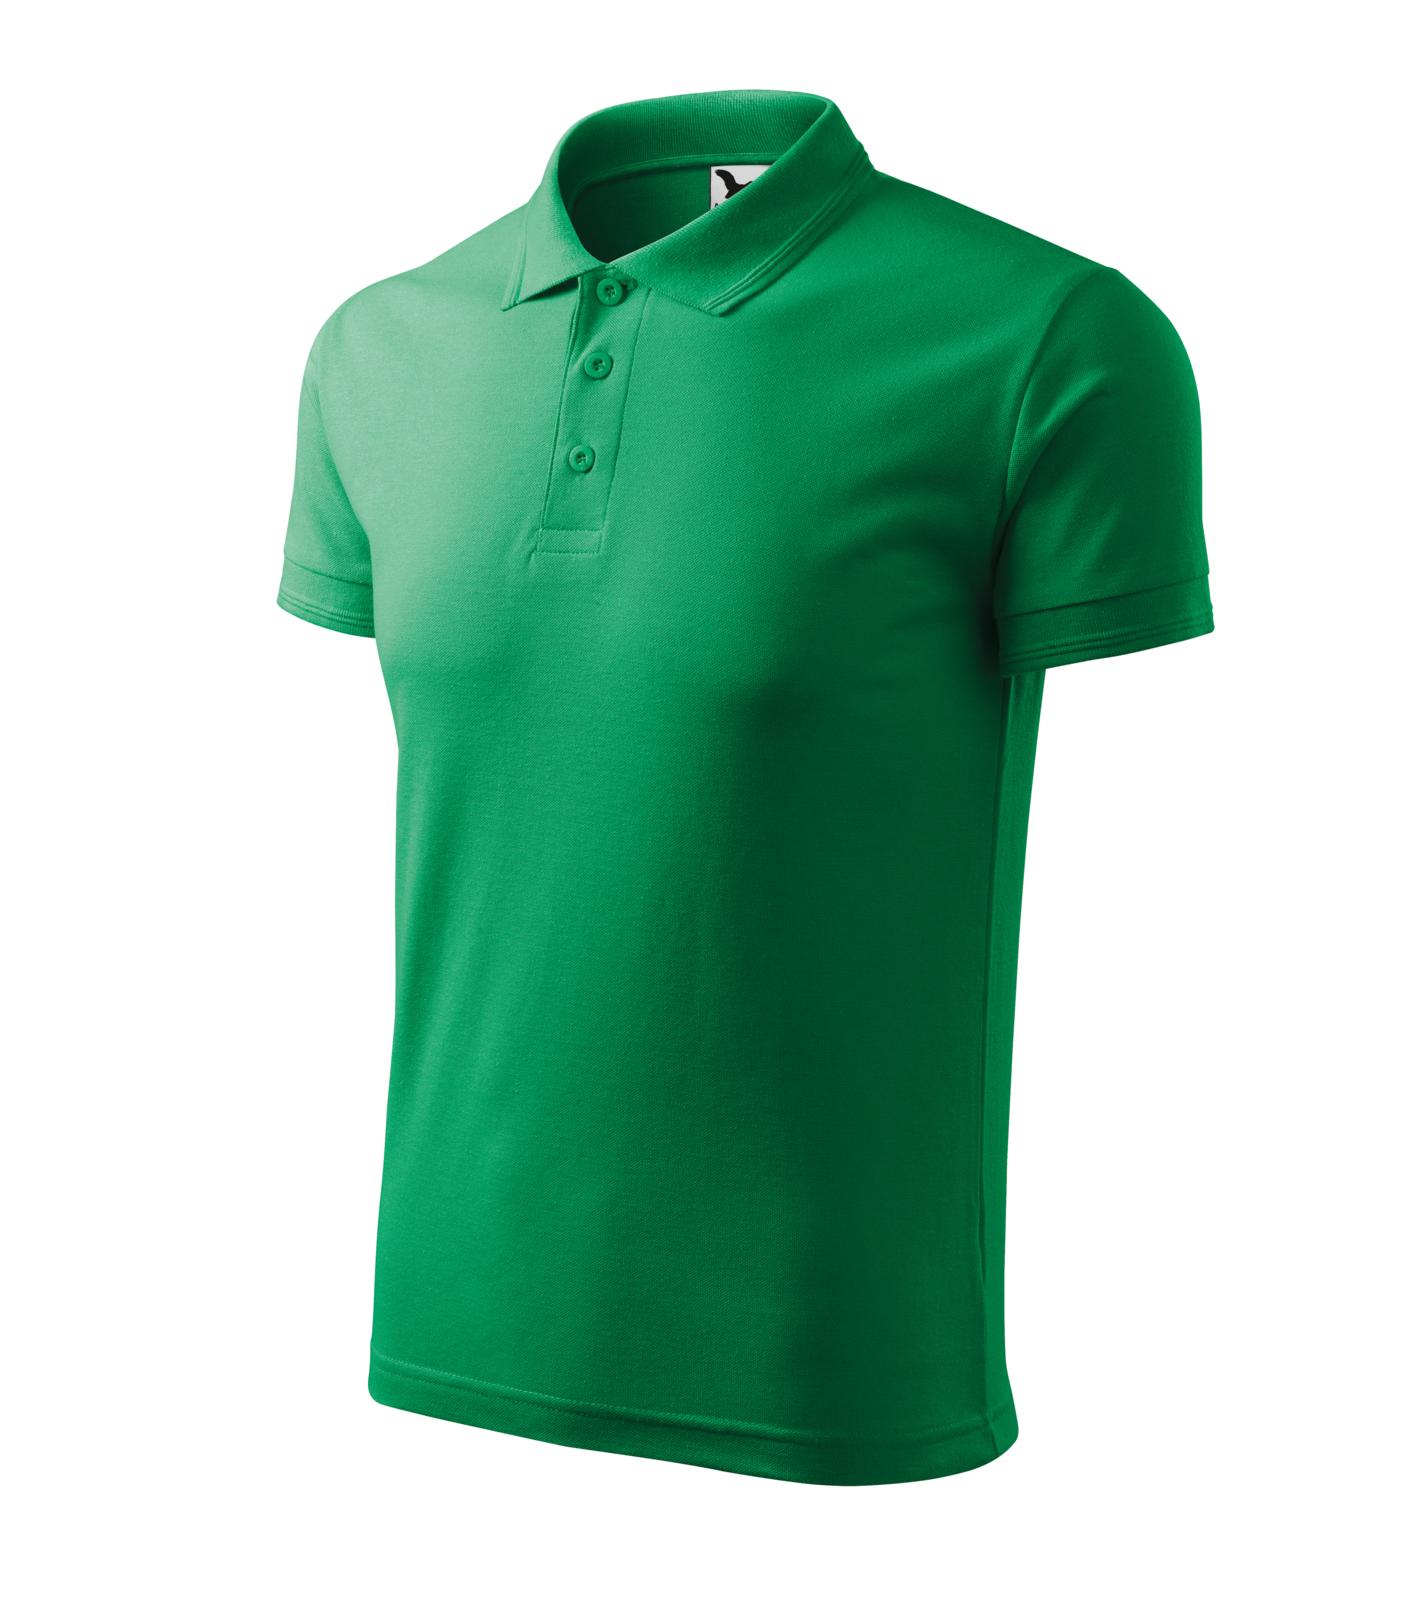 Pique Polo Polokošile pánská Barva: středně zelená, Velikost: L